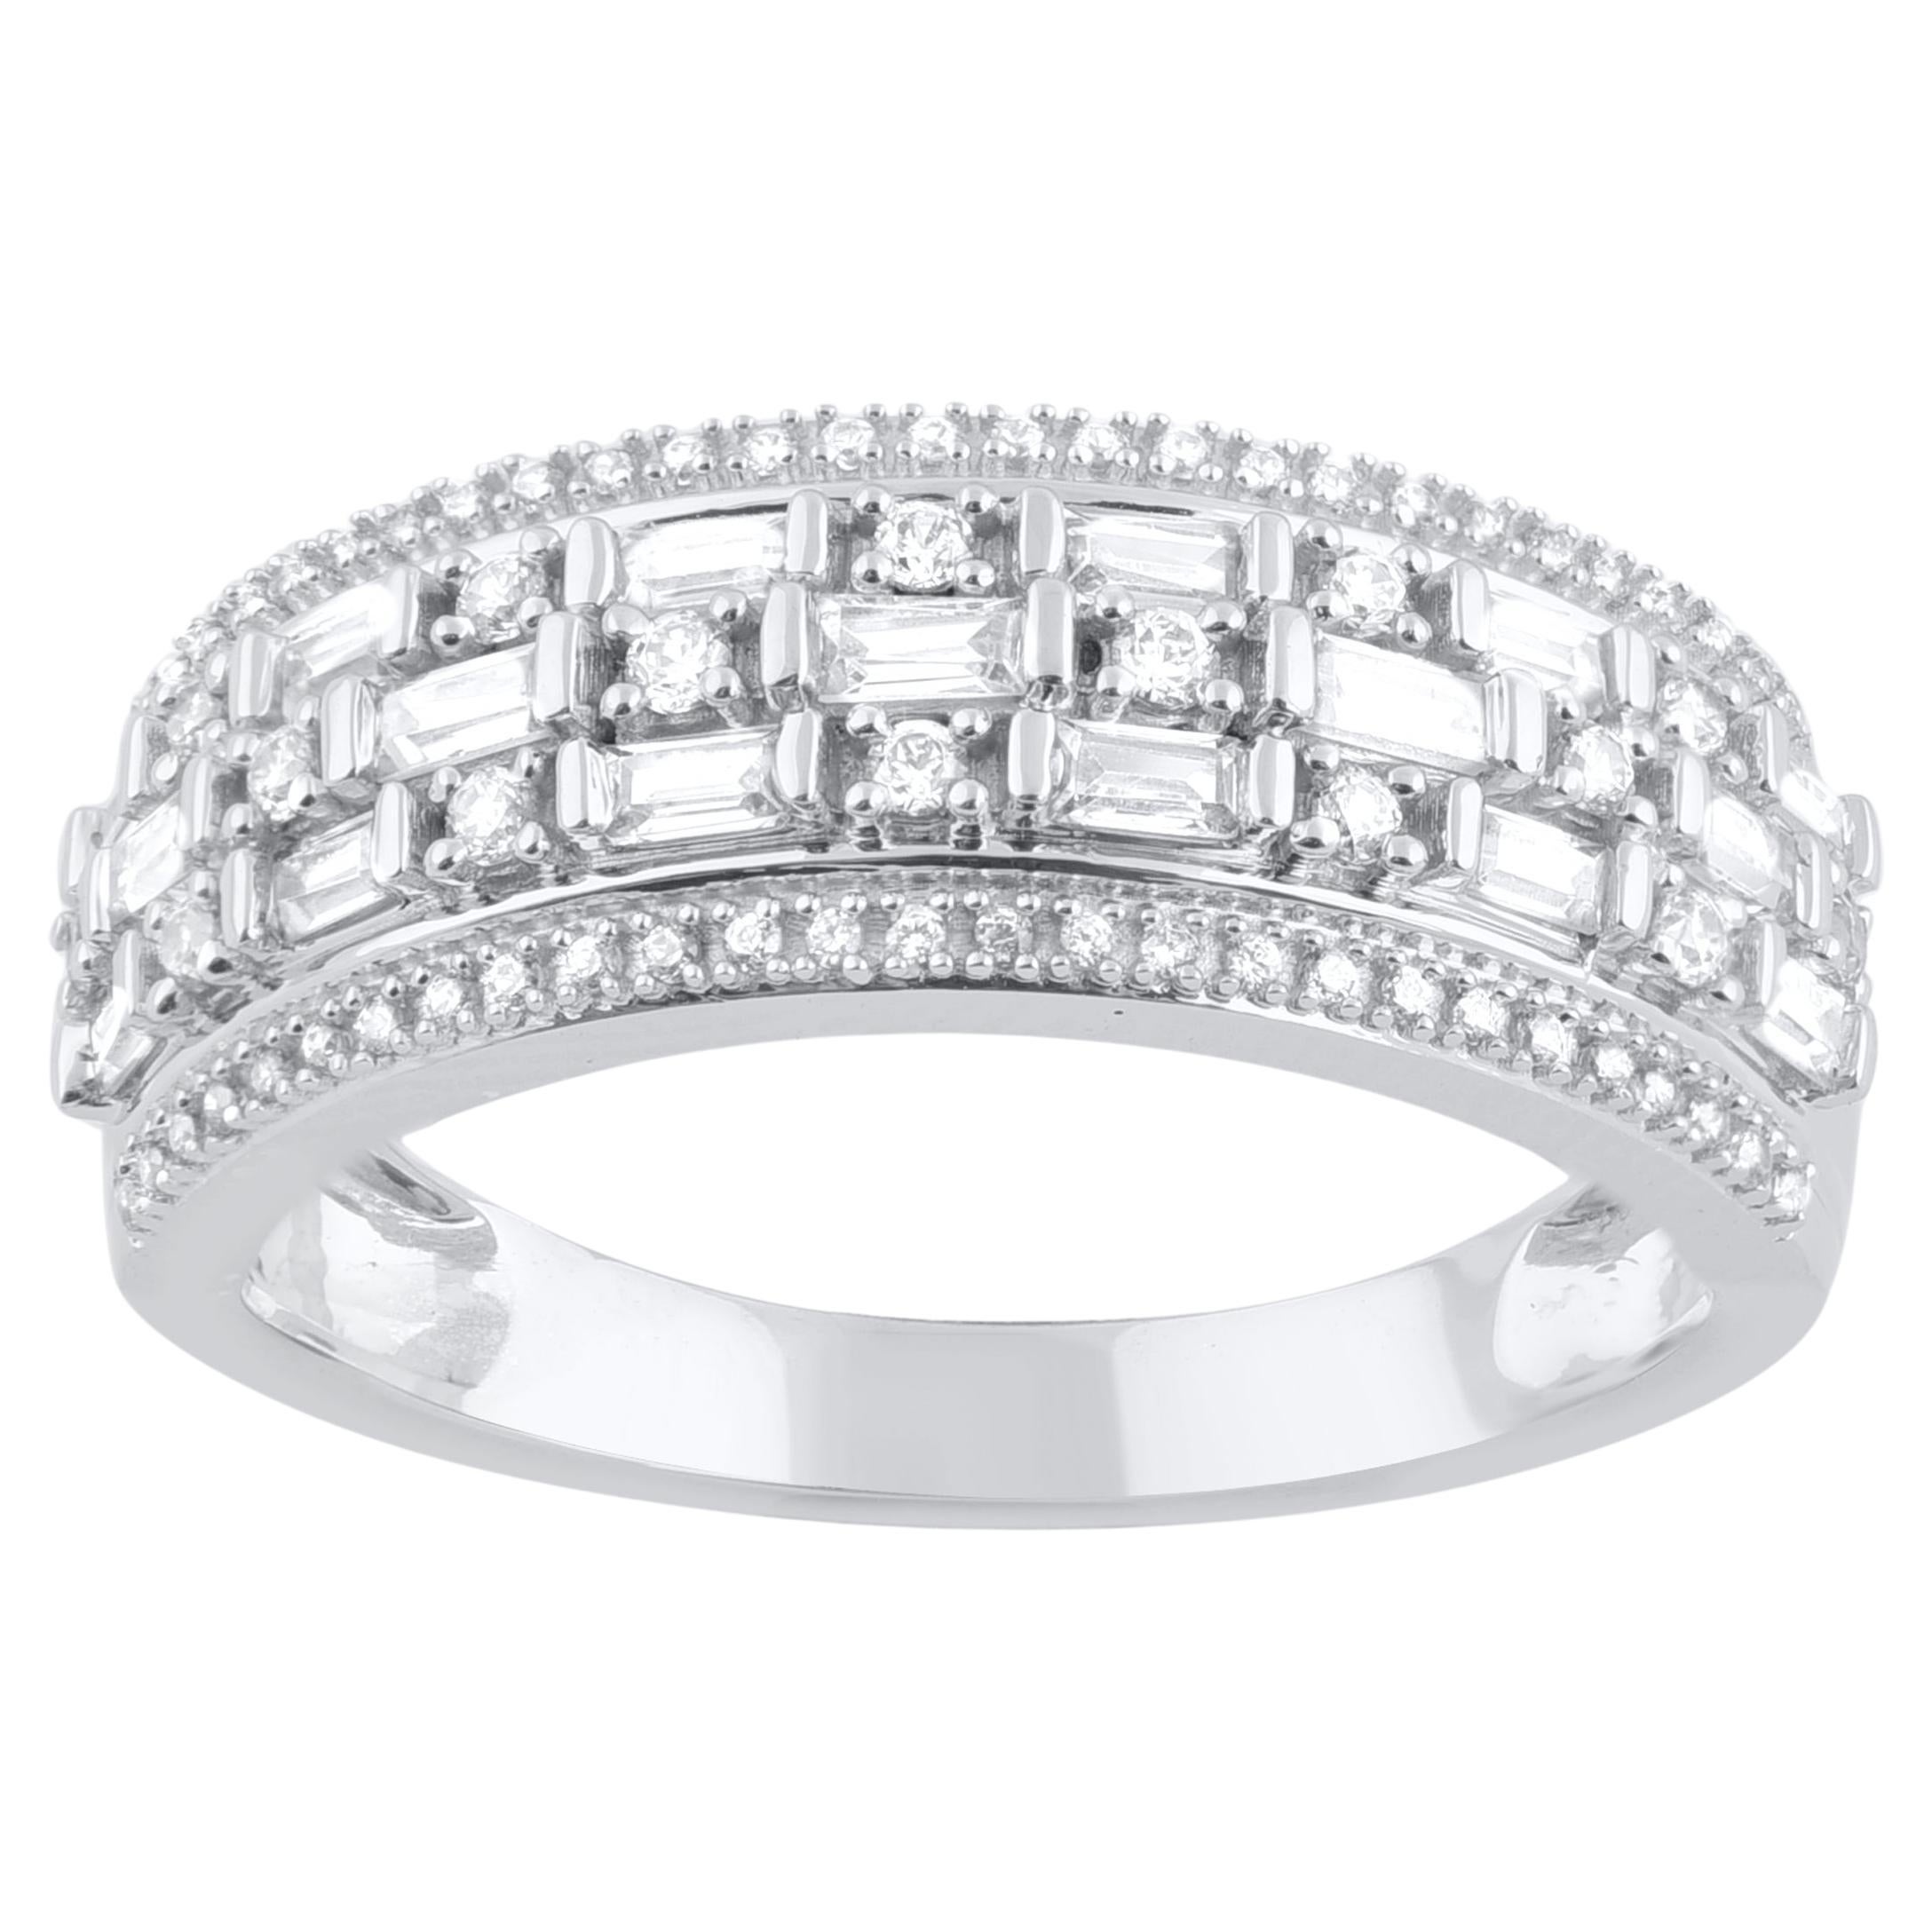 TJD 0.50 Carat Natural Diamond Wedding Band Ring in 18 Karat White Gold